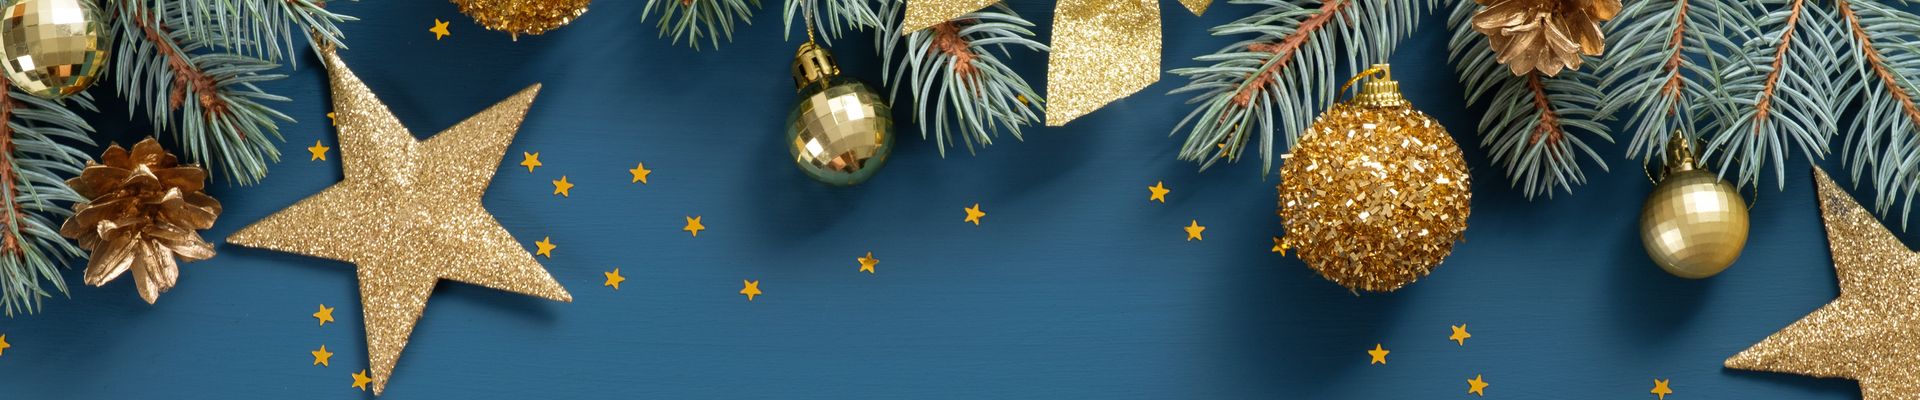 Weihnachtsschmuck wie Kugeln, Sterne und Schleifen sorgen für vorweihnachtliches Flair.